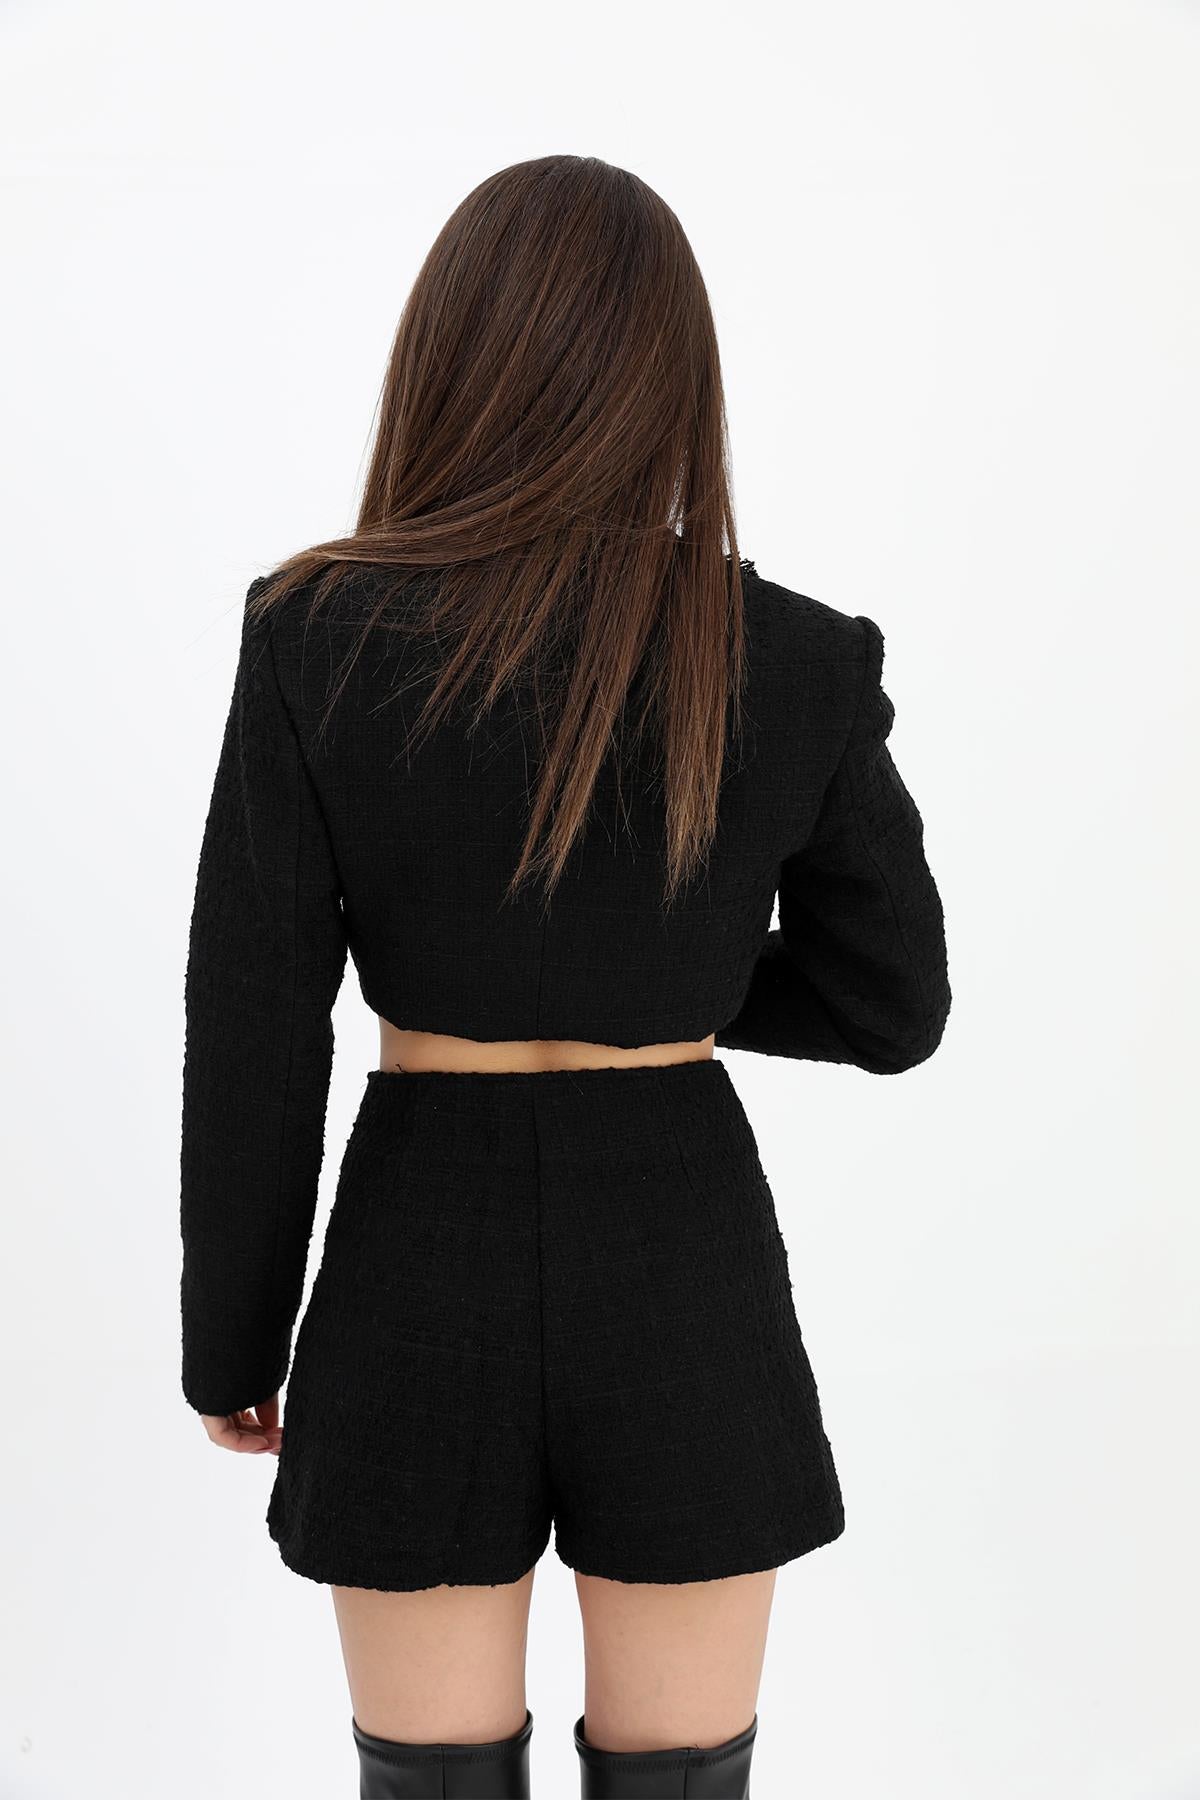 Women's High Waist Side Zipper Chanel Fabric Shorts Skirt - Black - STREETMODE ™